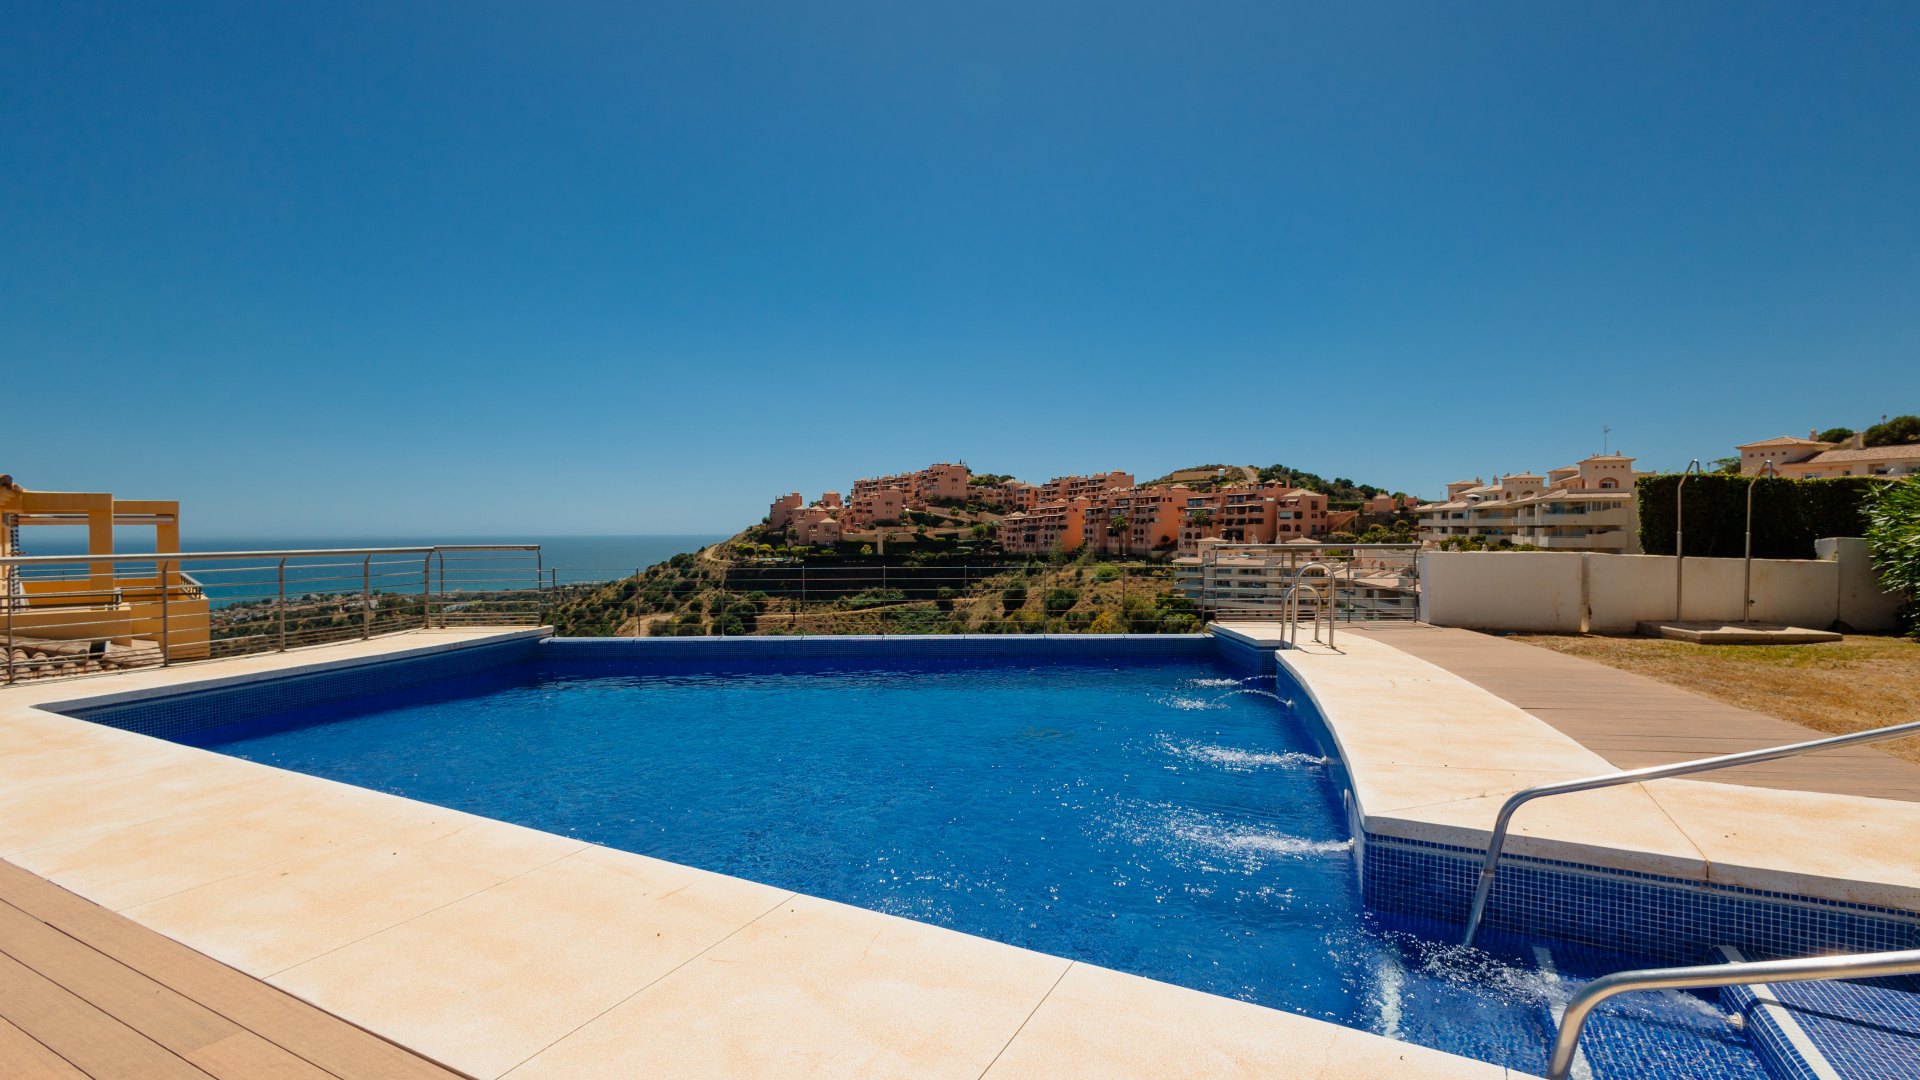 Apartamento, con gran terraza privada acristalada y vistas panoramicas al mar, en Calahonda, Mijas